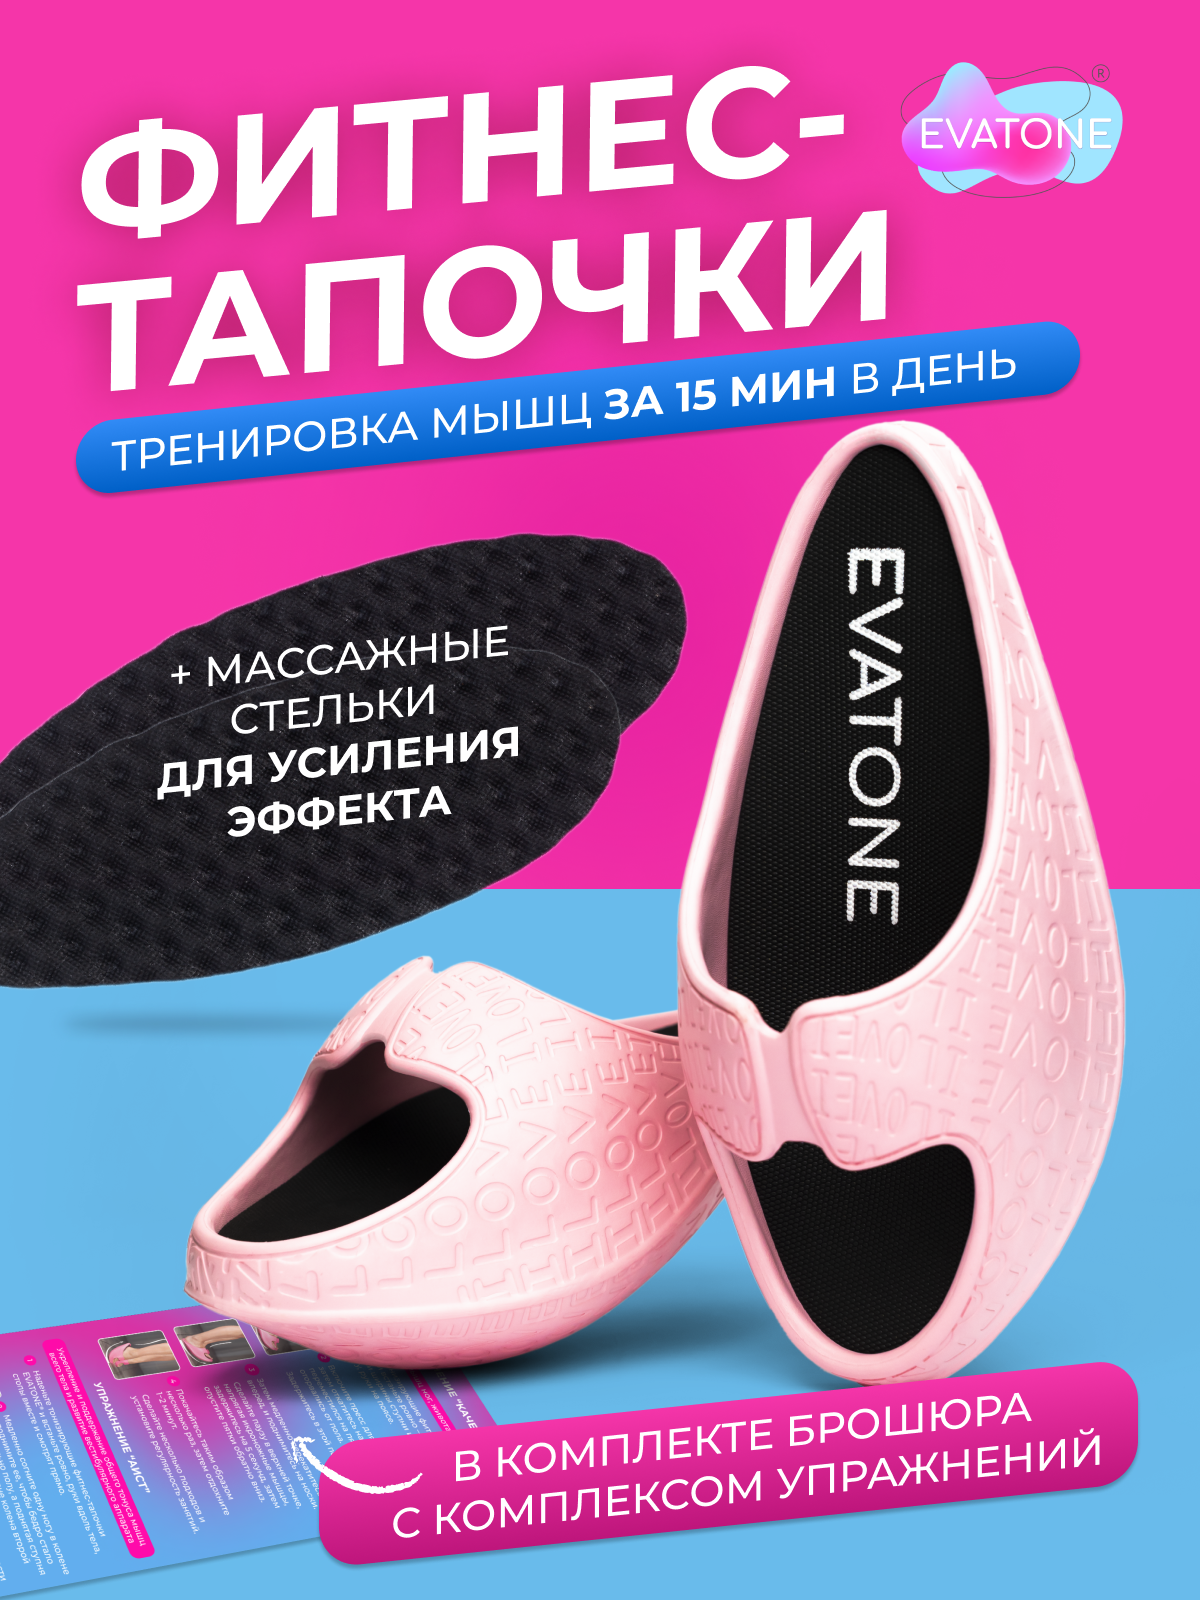 Баланс тапочки Эватон, цвет светло-розовый, размер 37-38, фитнес тапочки для тренировки мышц